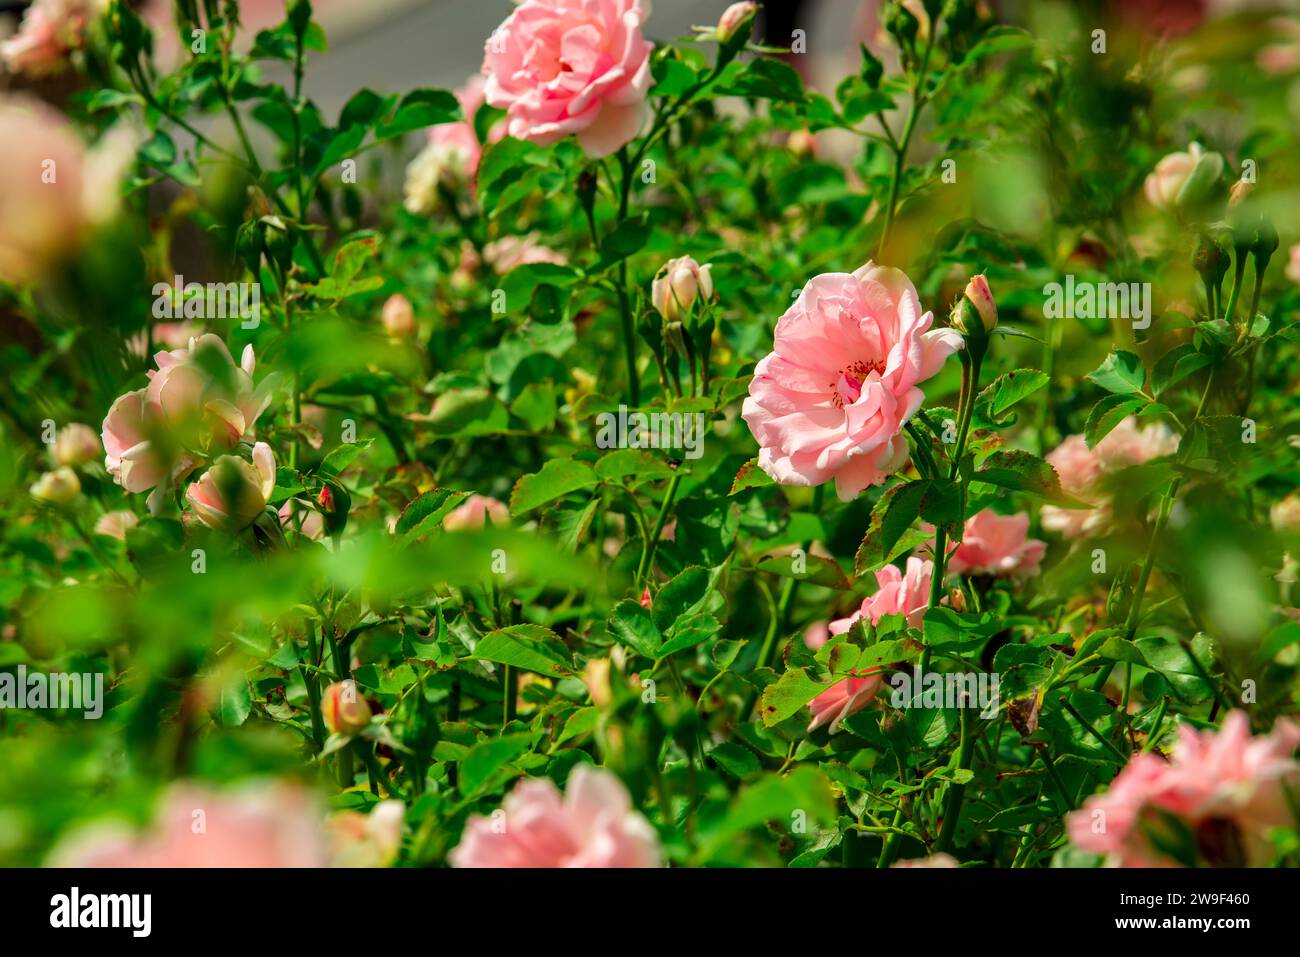 una bella rosa rosa-arancio che fiorisce in un giardino di strada, è circondata da altre rose e foglie verdi Foto Stock